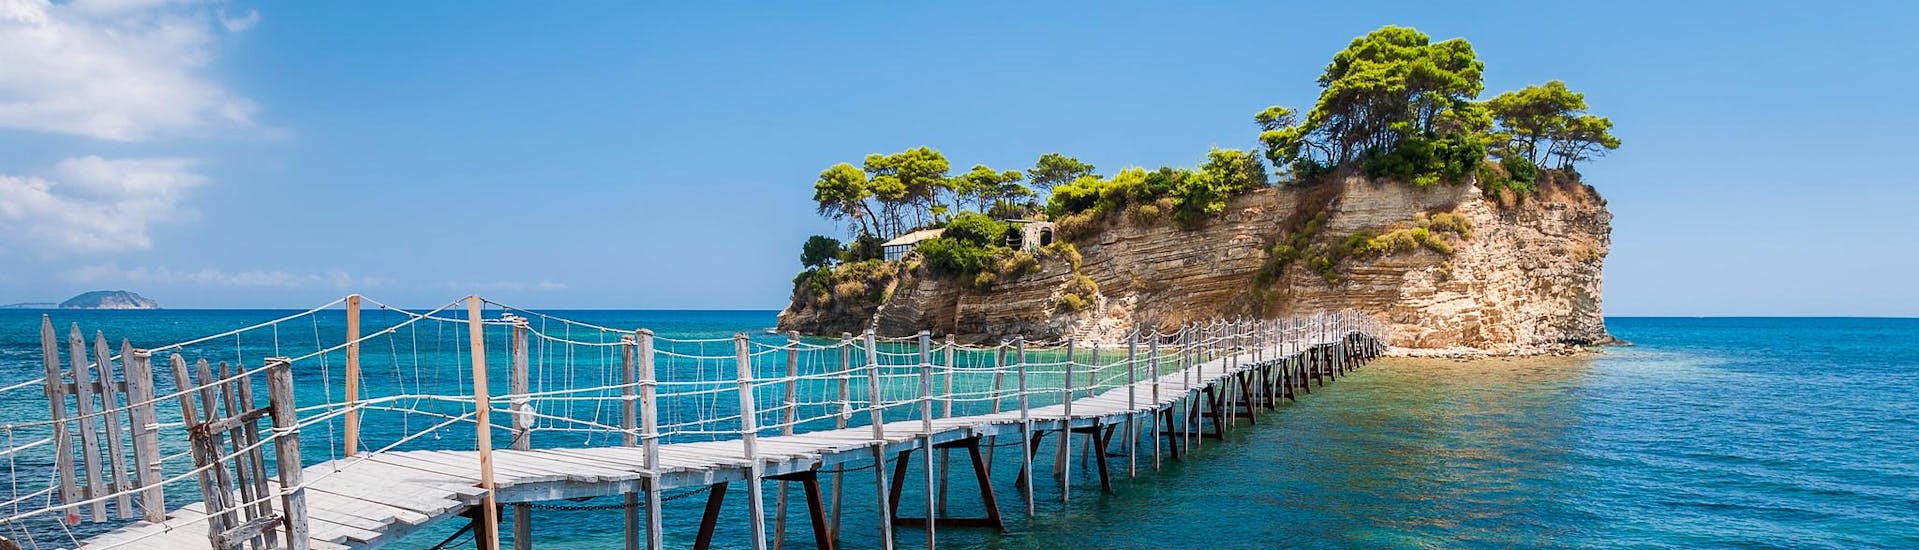 Blick auf die Insel Cameo, ein idyllischer Ort, den man mit einer Bootstour nach Zakynthos erreichen kann.